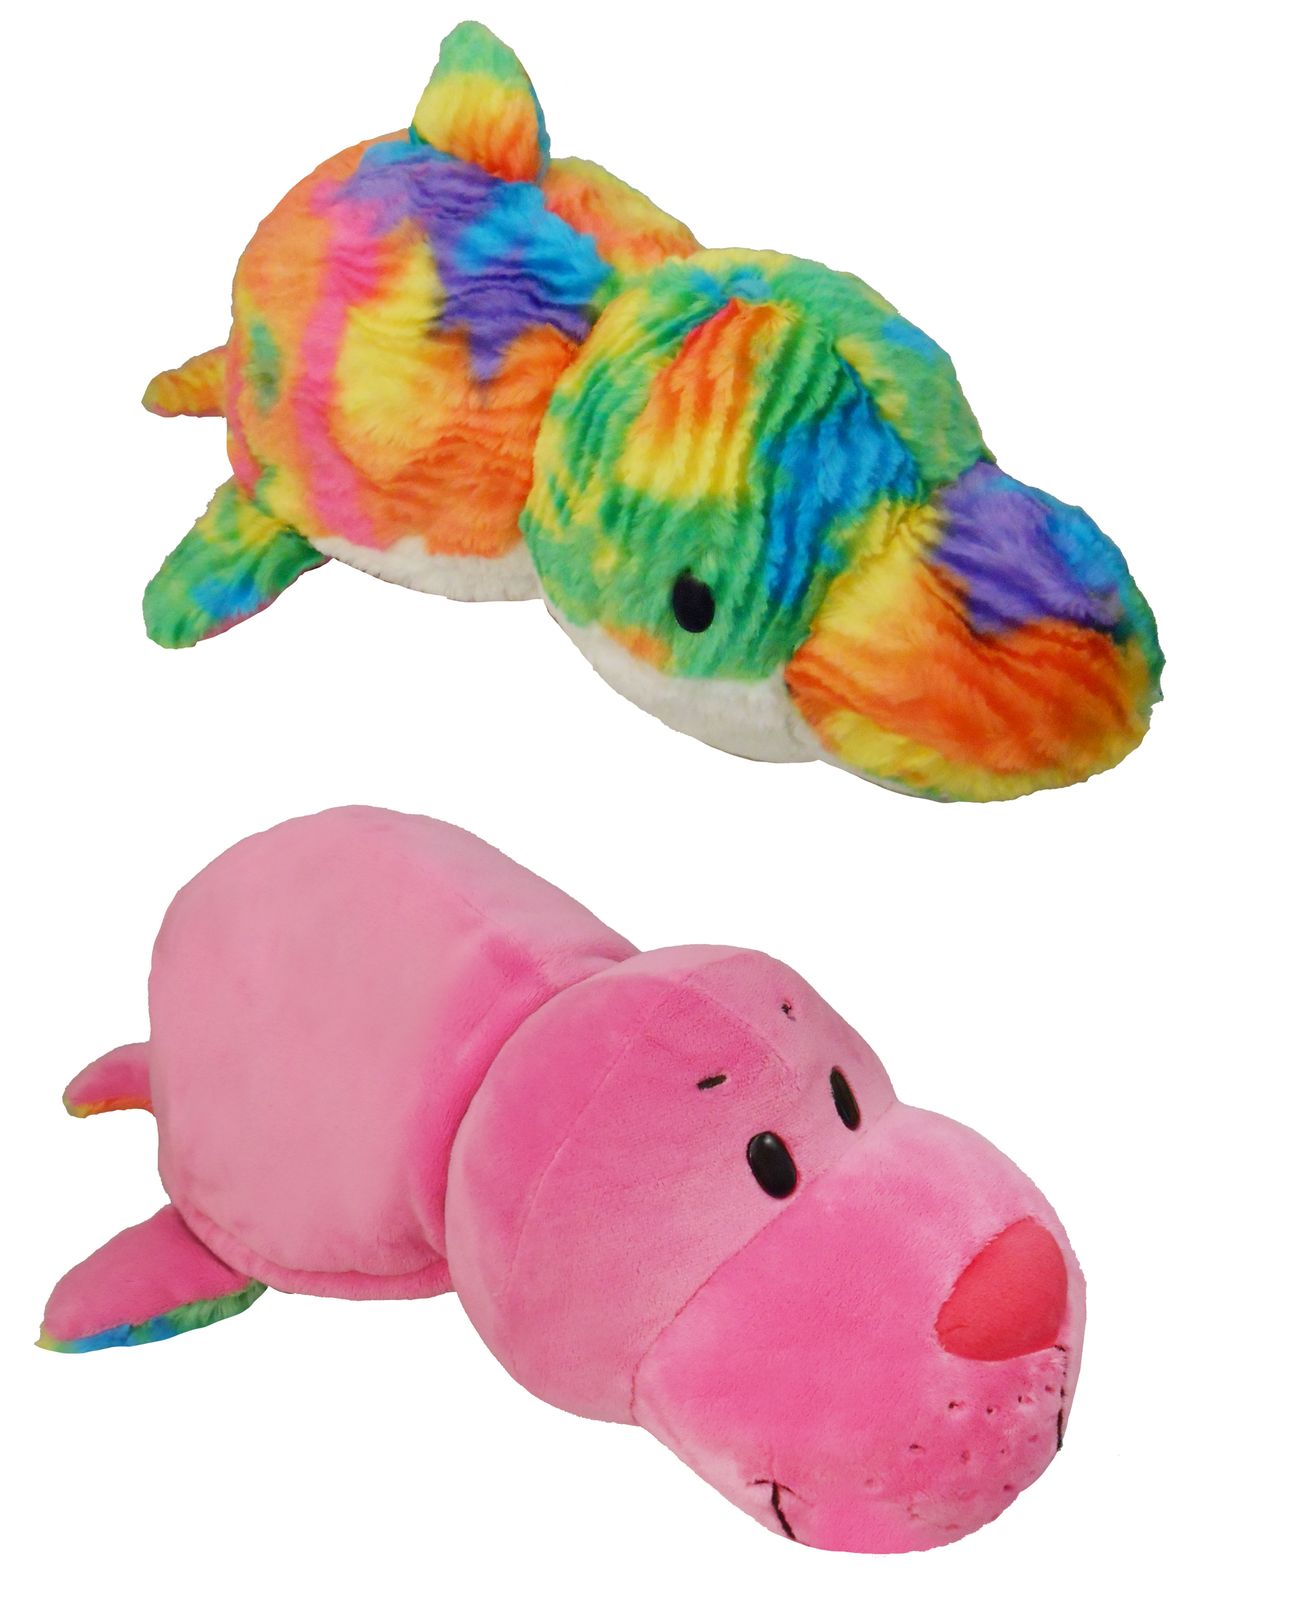 1TOY Мягкая игрушка Вывернушка 2в1 Морской котик-Радужный Дельфин 40 см